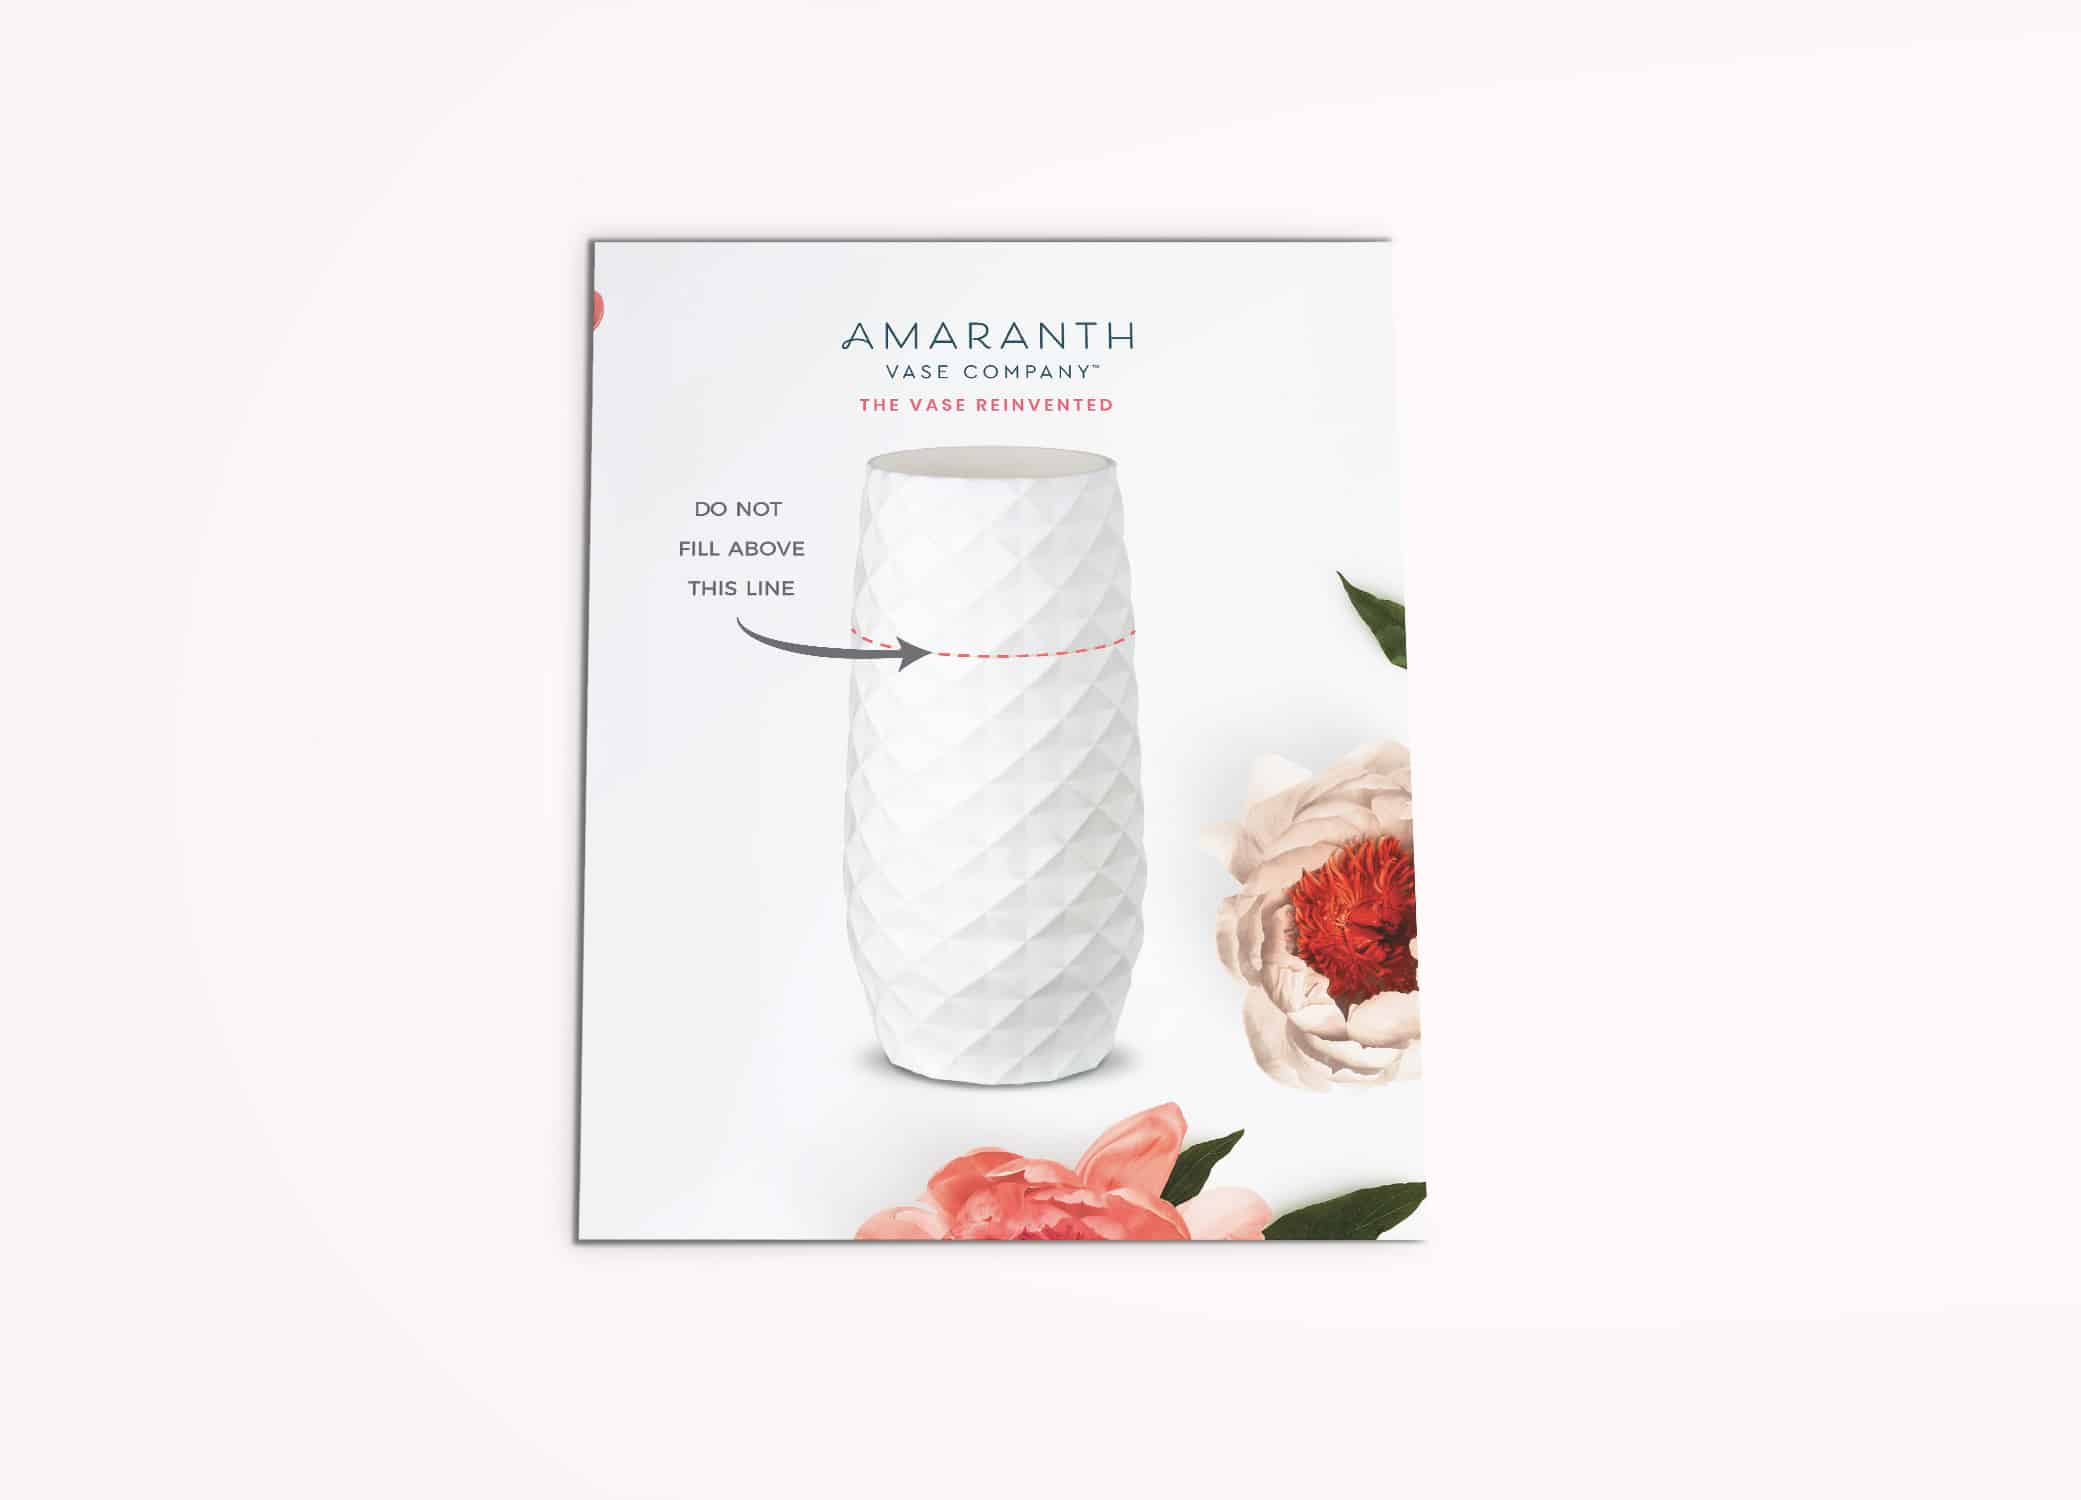 Amaranth Vase instructional postcard against light pink background.